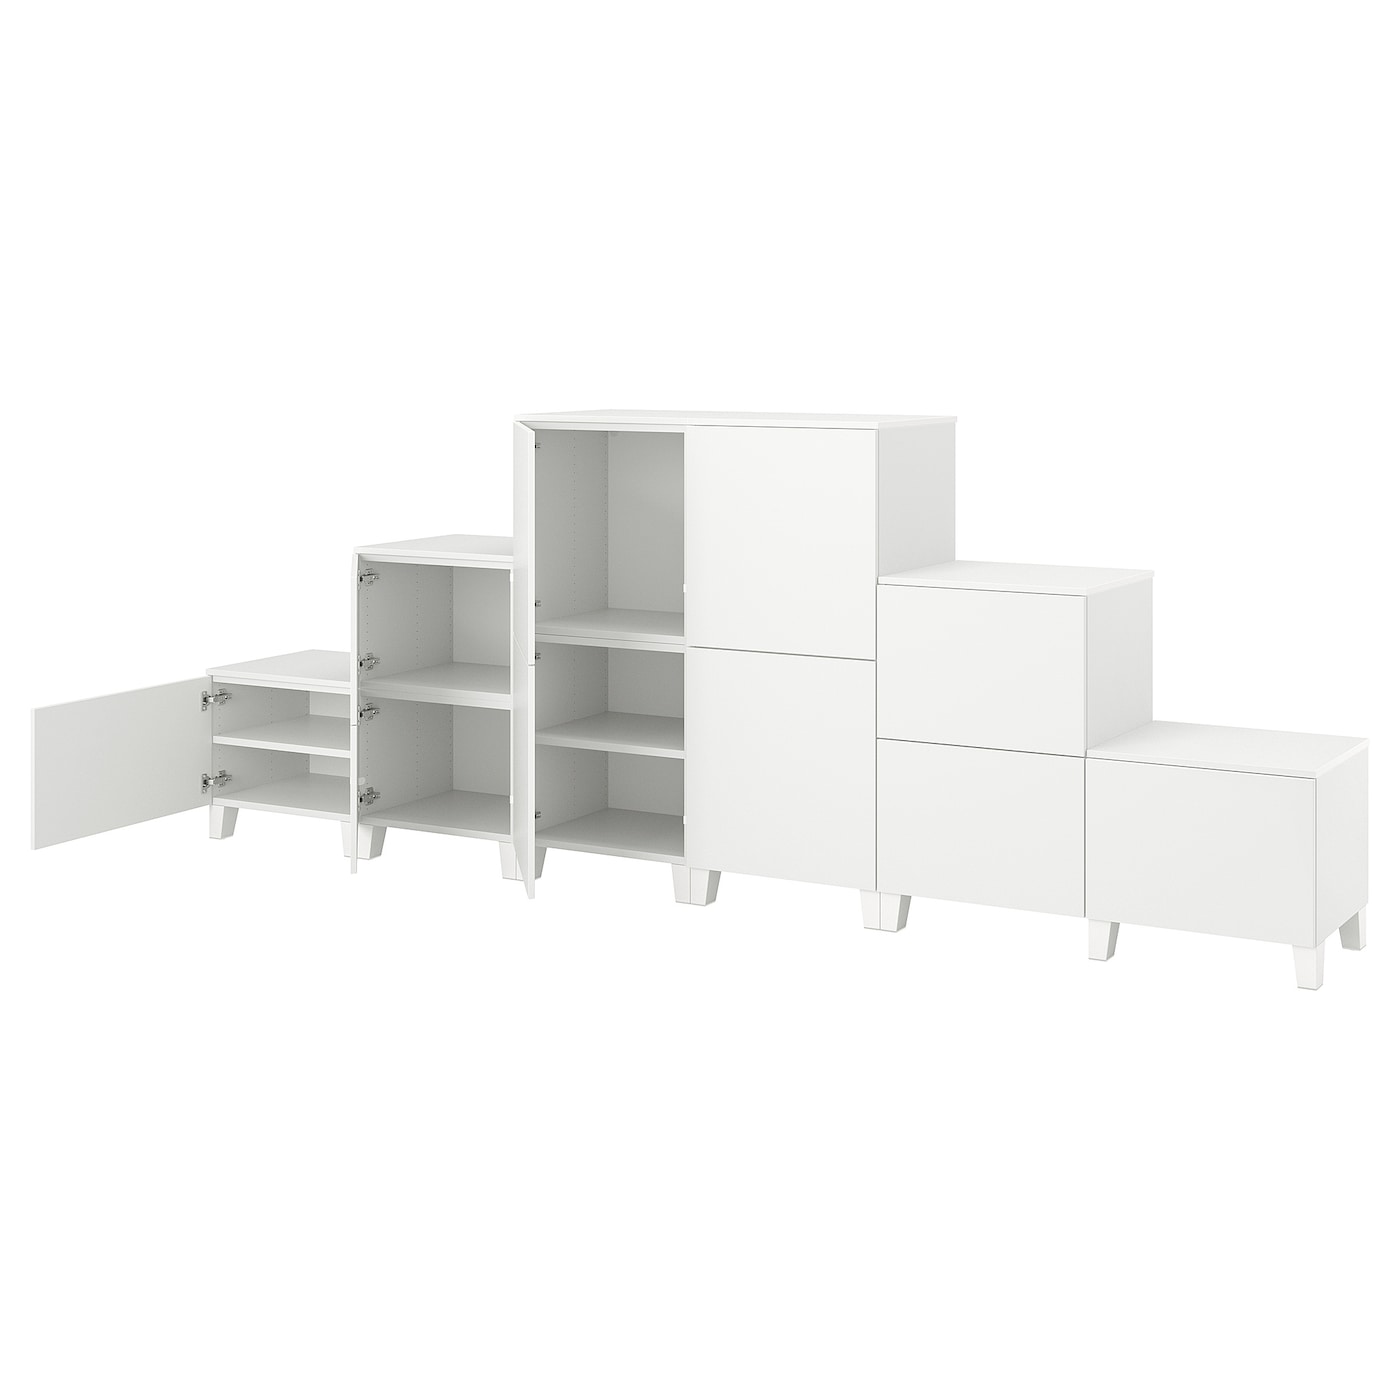 Платяной шкаф - PLATSA/IKEA/ ПЛАТСА ИКЕА,360x42x133 см, белый